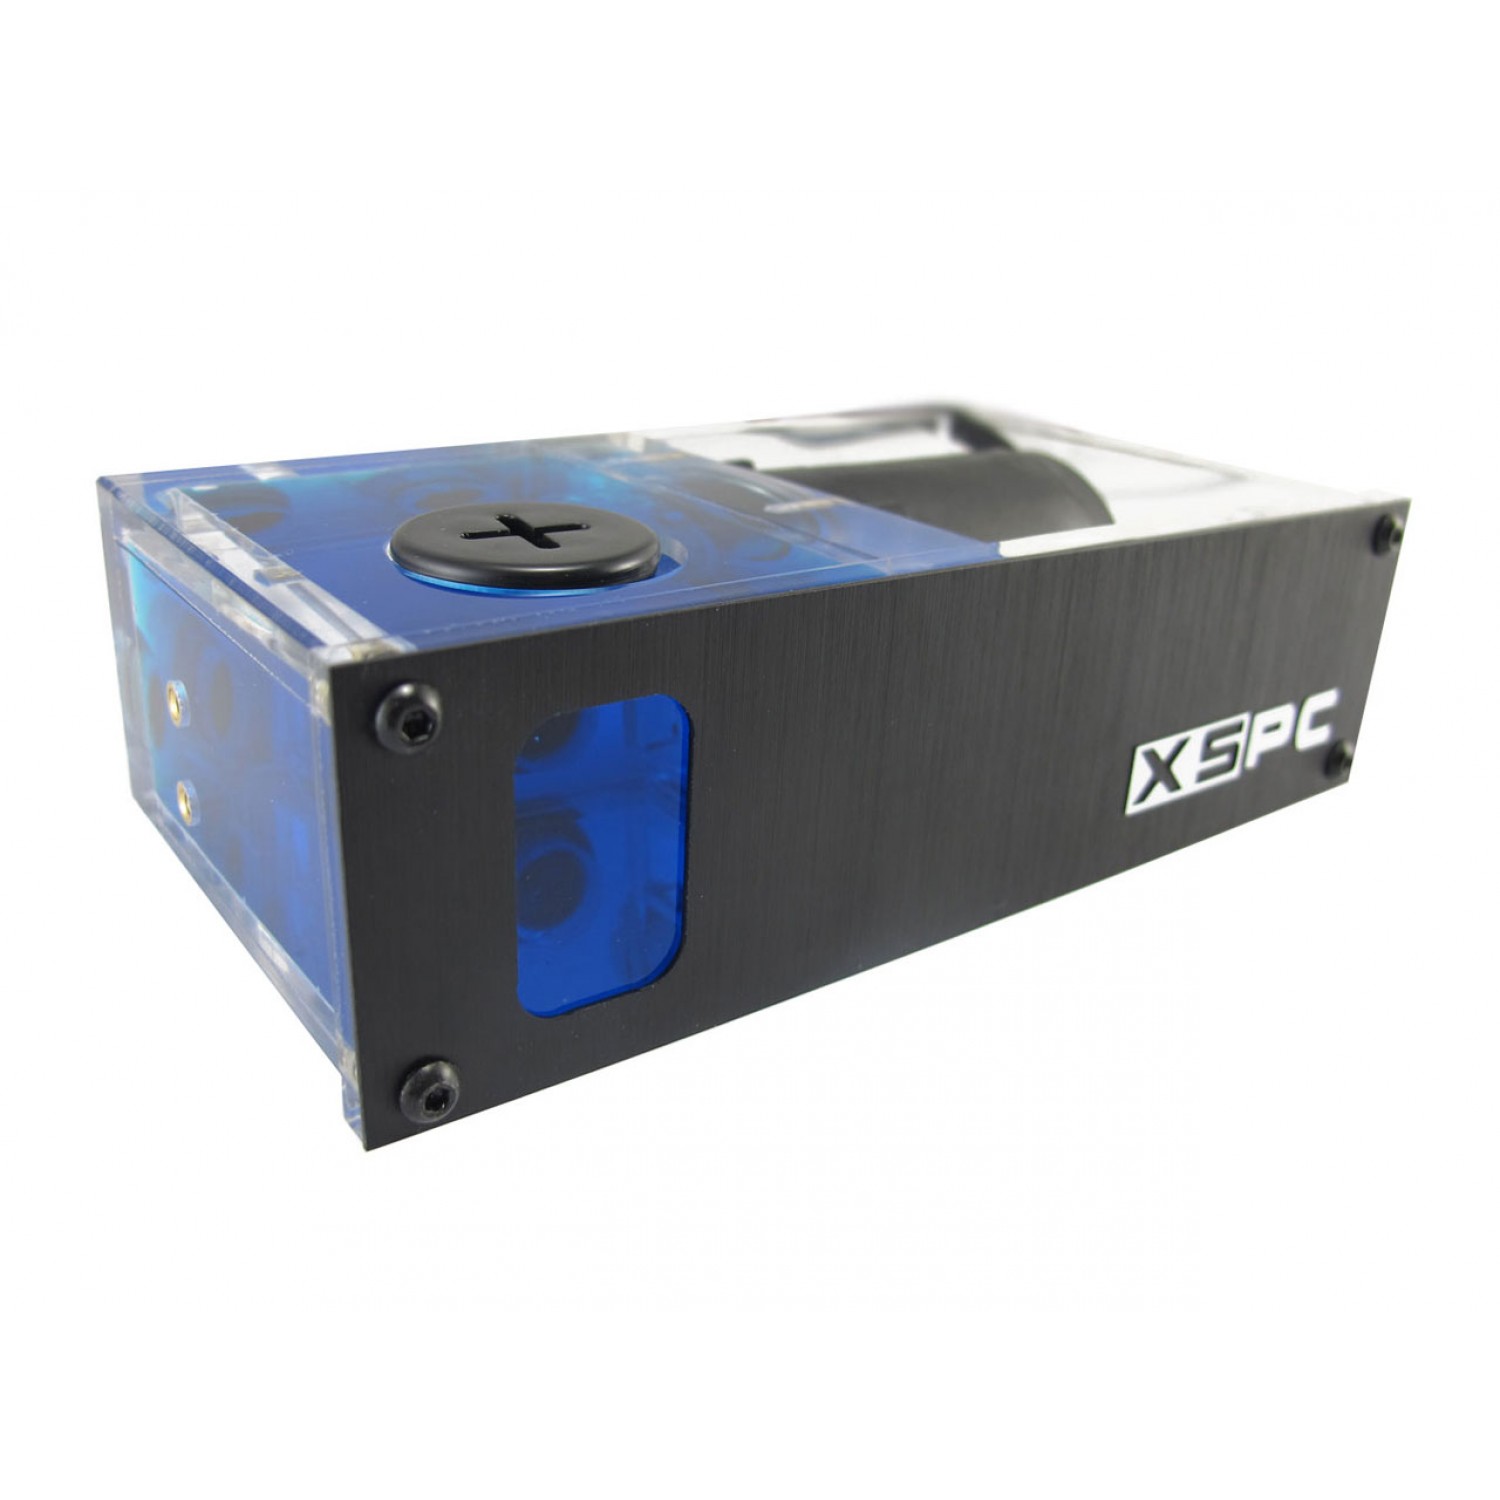 کیت کولر پردازنده RayStorm 420 EX240-3